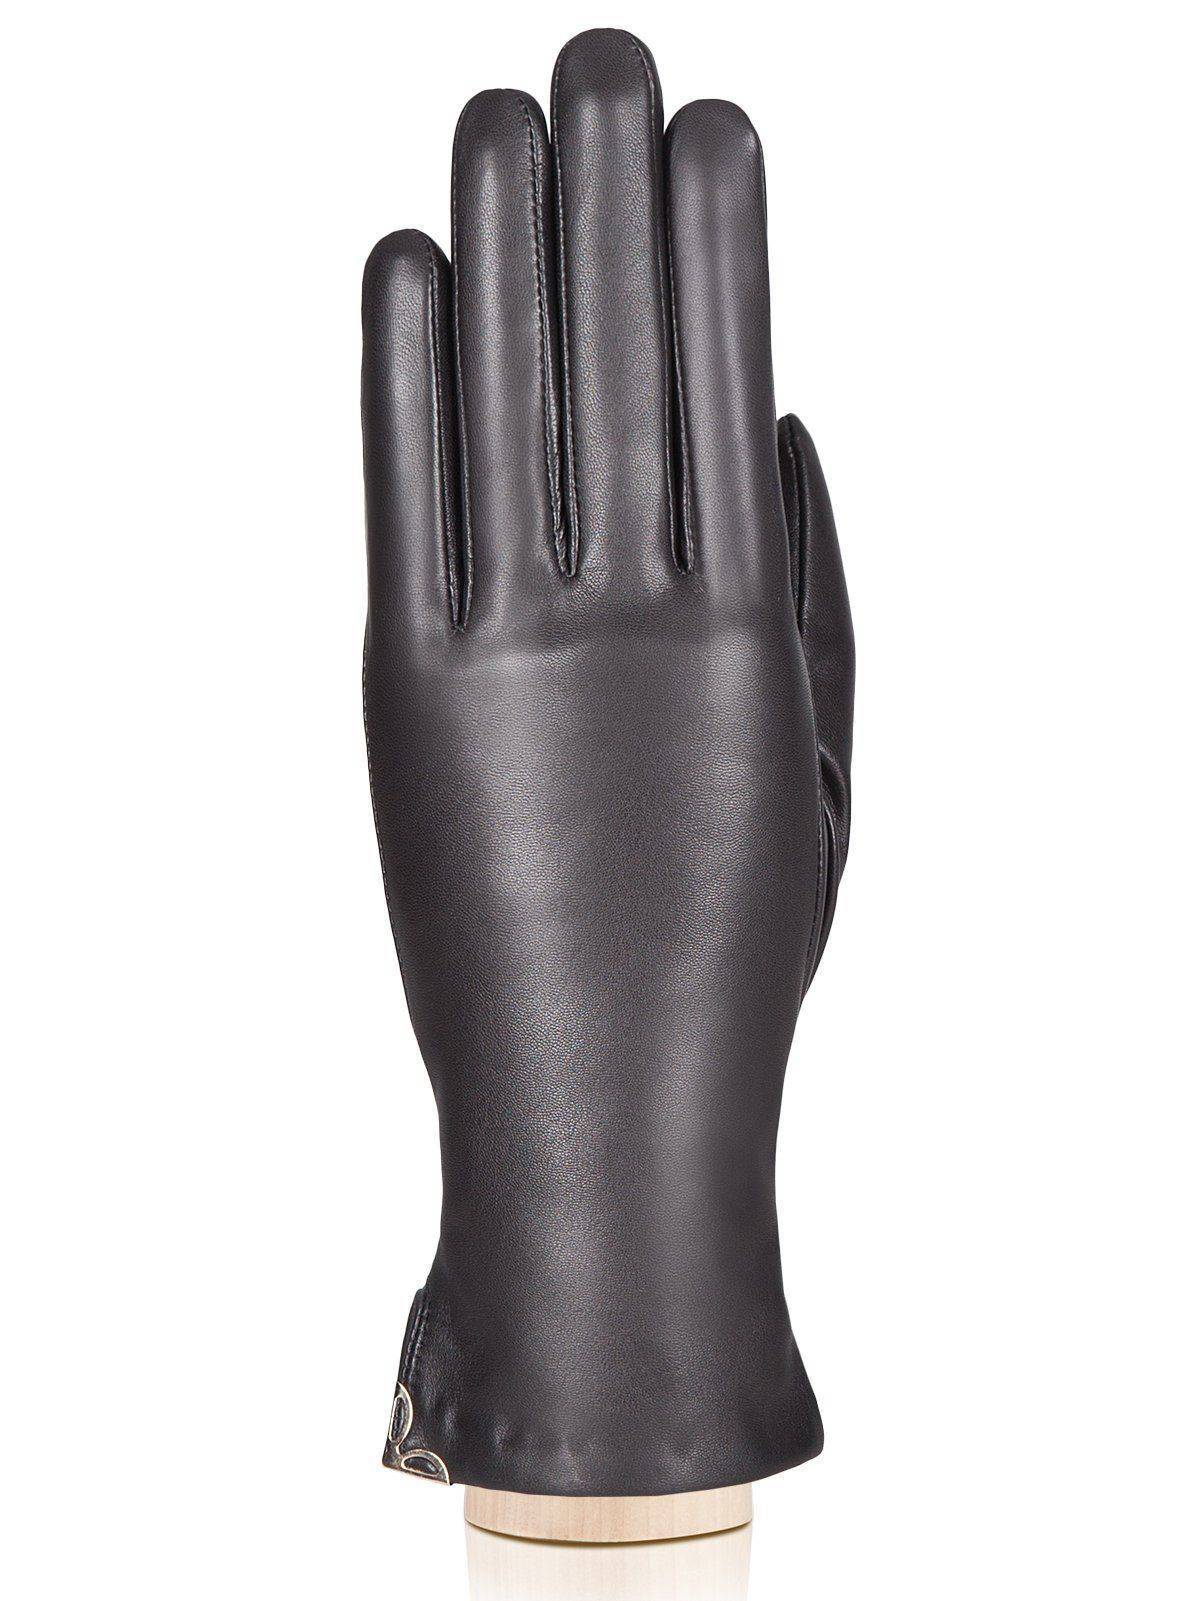 Перчатки ELEGANZZA IS953, цвет черный, размер 6.5 - фото 1